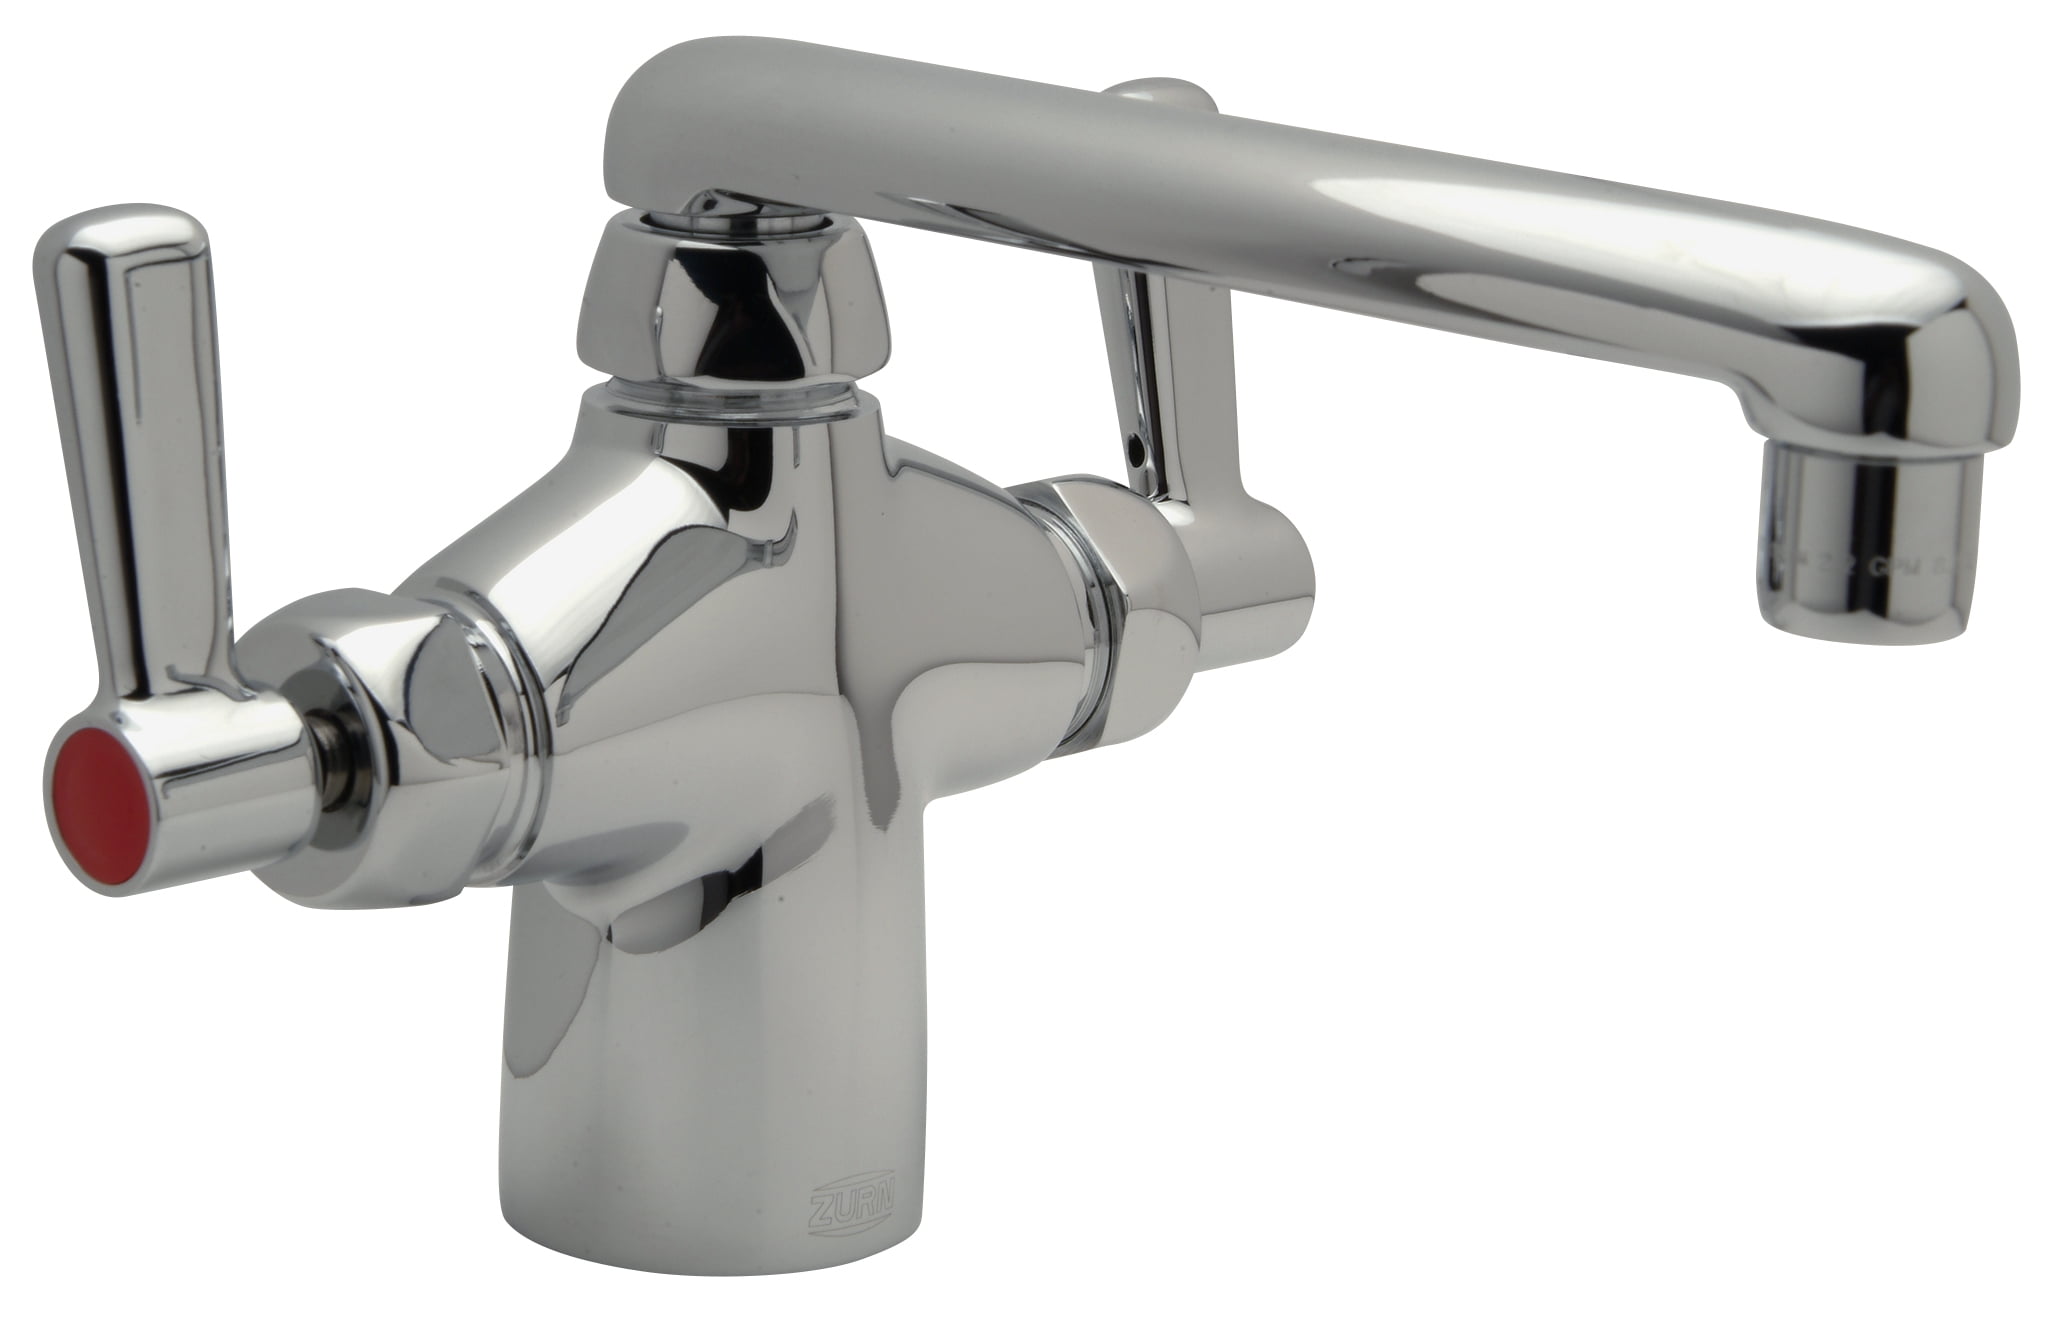 fischer faucet for kitchen sink